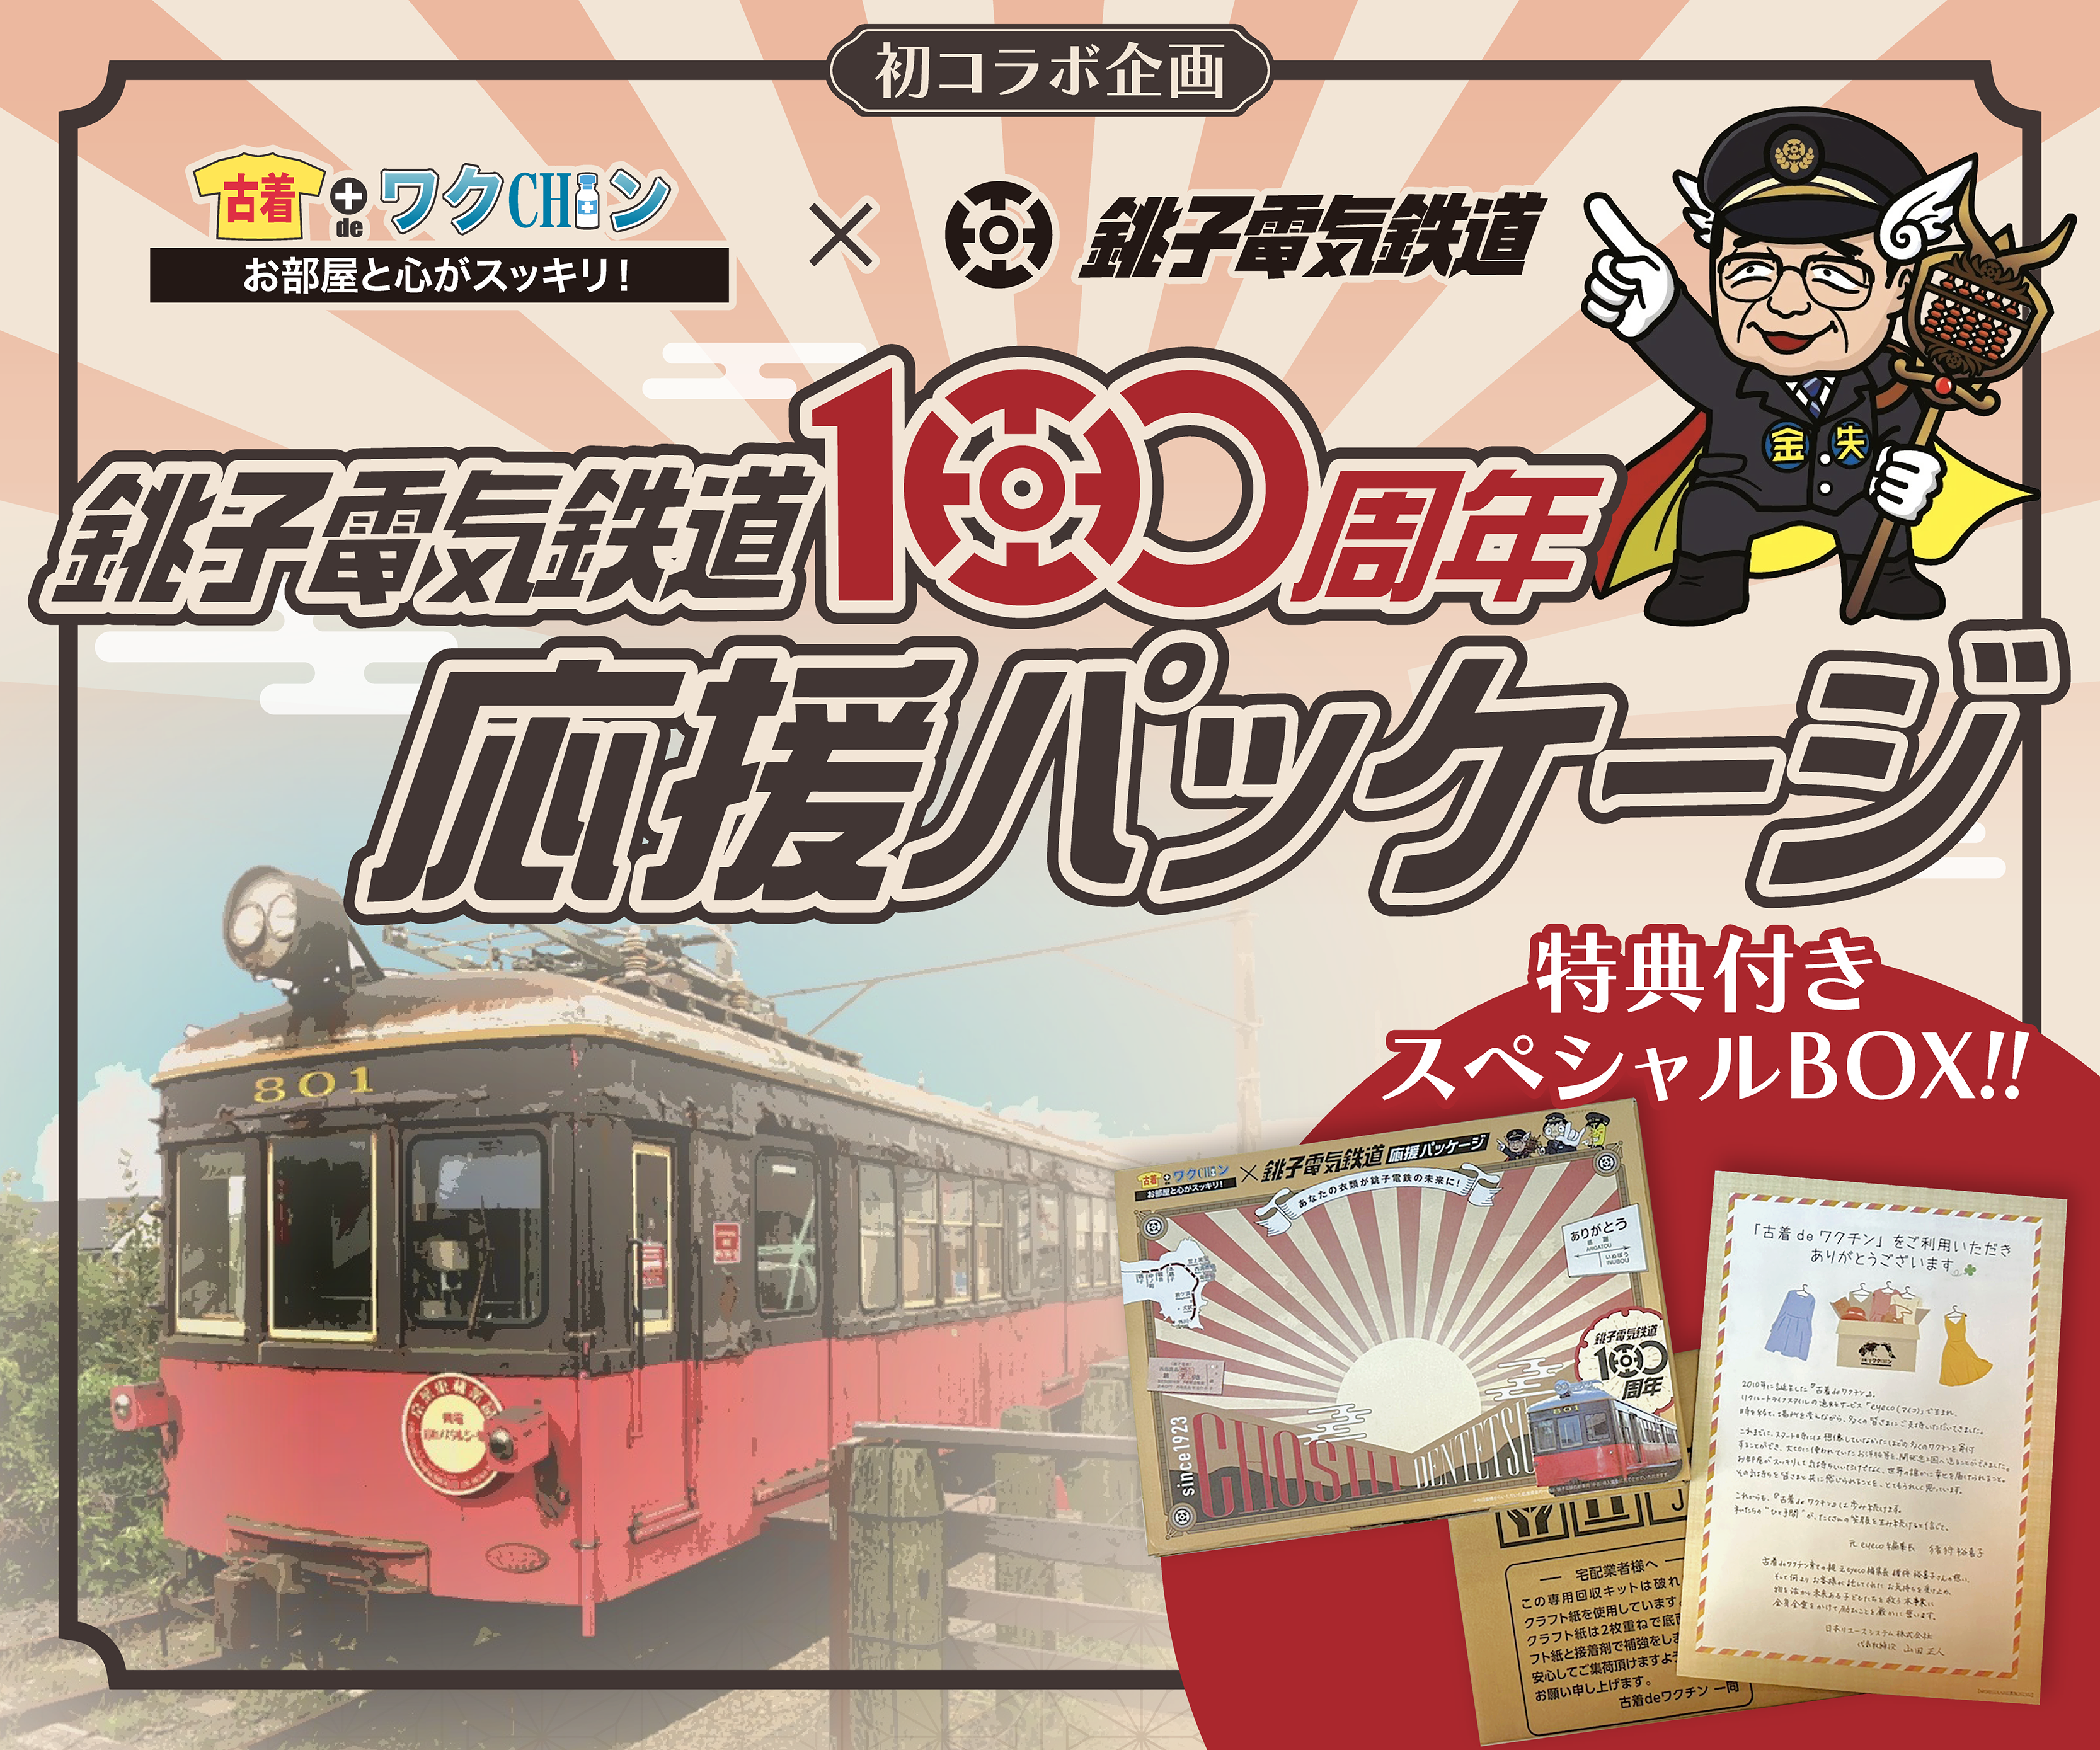 銚子電気鉄道100周年応援パッケージトップ画像